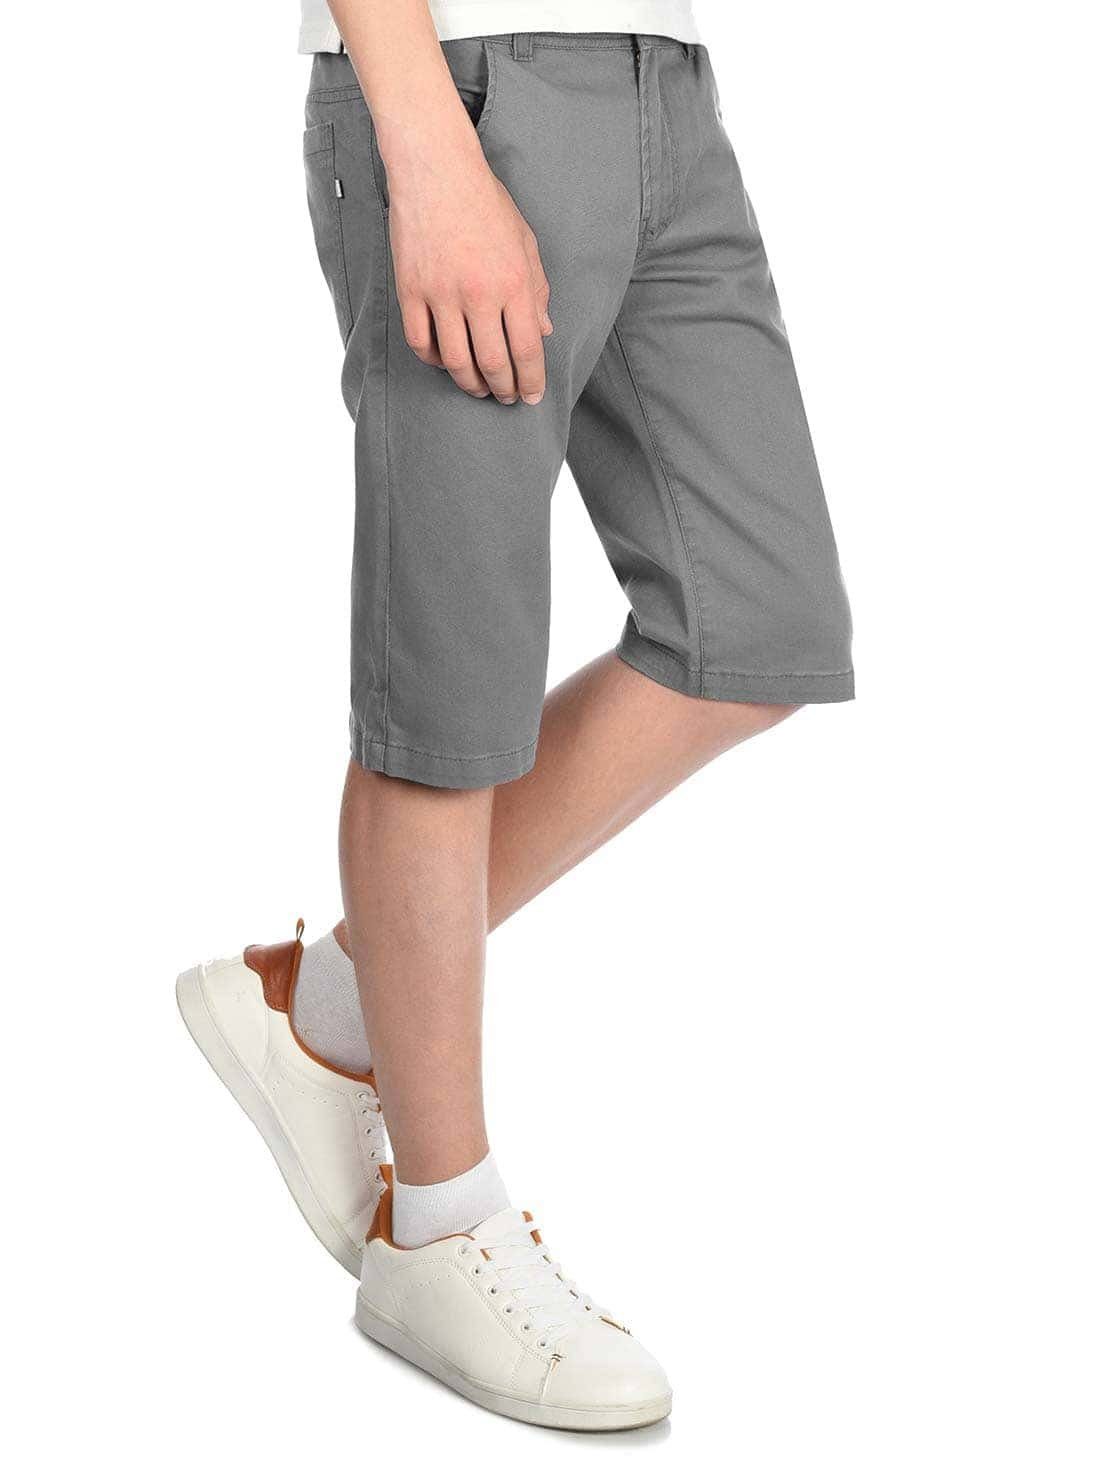 BEZLIT Chinoshorts Kinder mit Bund Grau (1-tlg) Chino Shorts elastischem Jungen